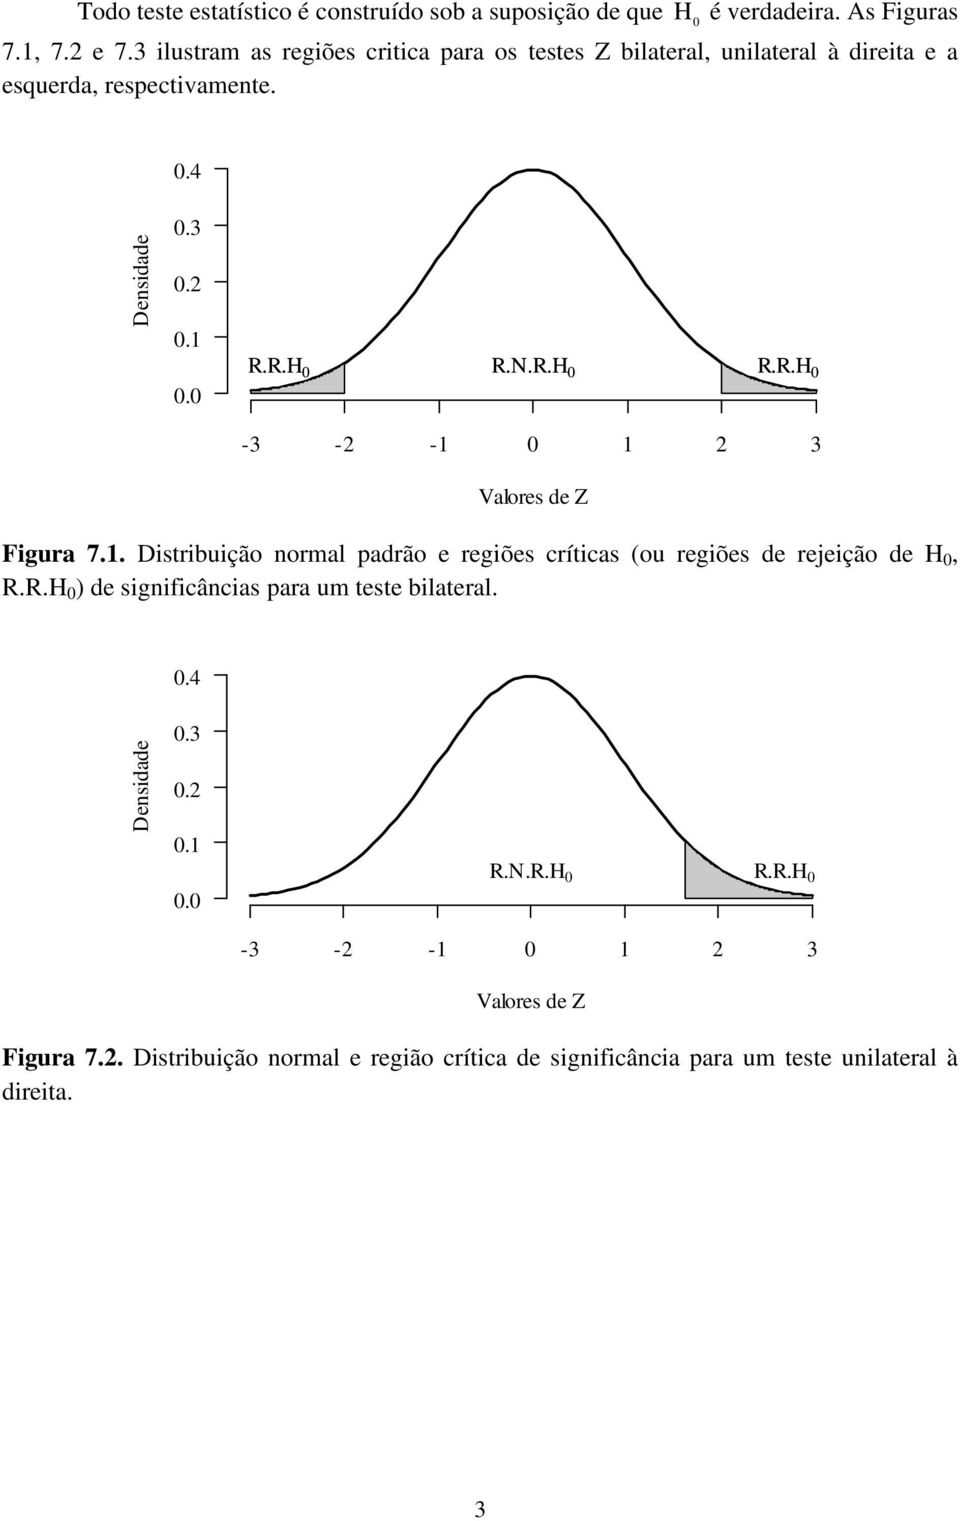 R.H R.N.R.H R.R.H -3 - - 3 Valores de Z Figura 7.. Distribuição normal padrão e regiões críticas (ou regiões de rejeição de H, R.R.H ) de significâncias para um teste bilateral.